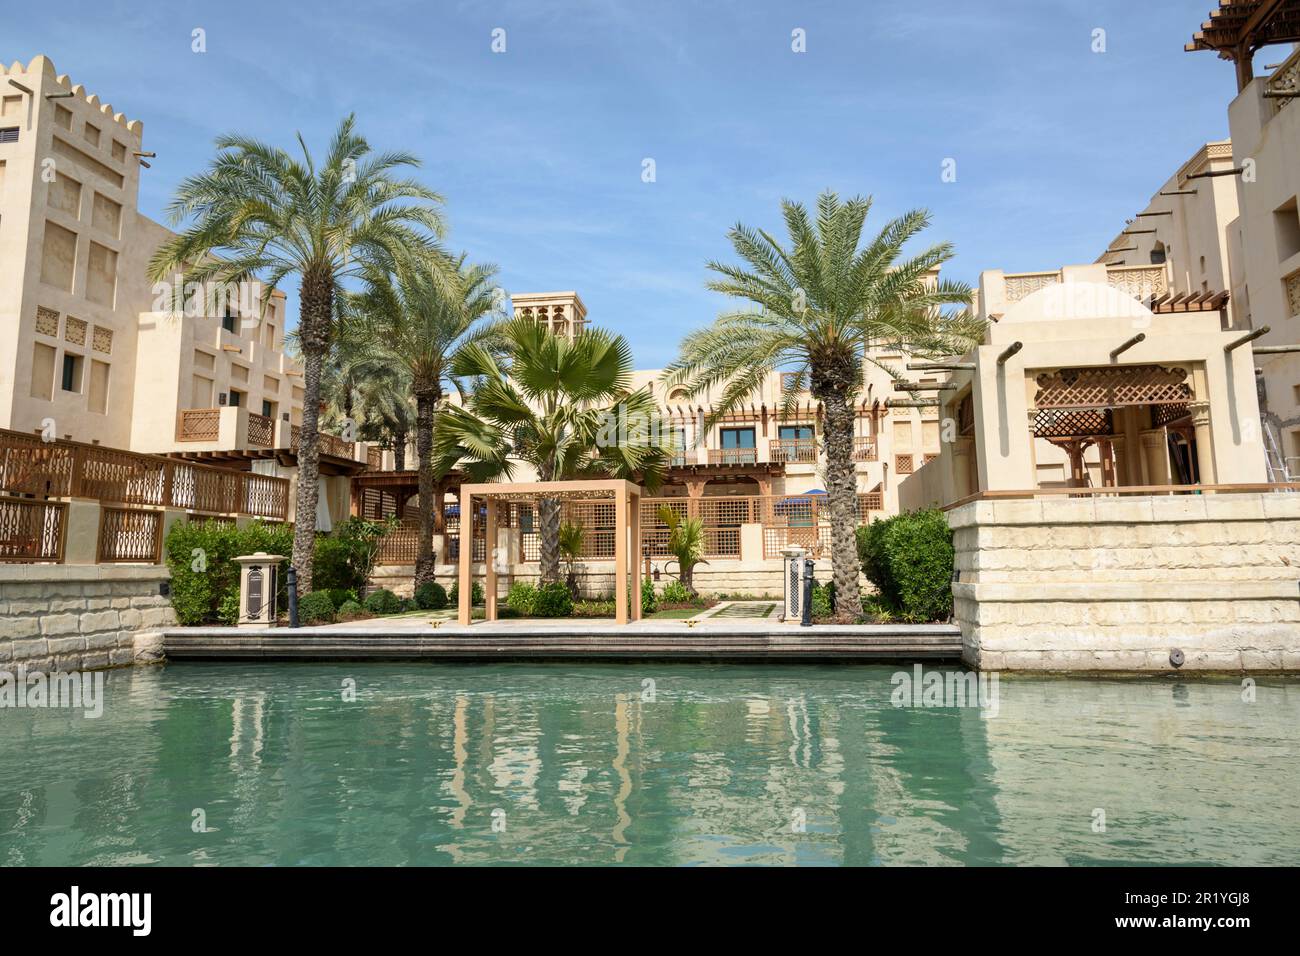 Madinat Jumeirah à Dubaï est une interprétation moderne d'un village arabe traditionnel avec des hôtels de luxe, des souks, des restaurants et des cours d'eau bordés de palmiers Banque D'Images